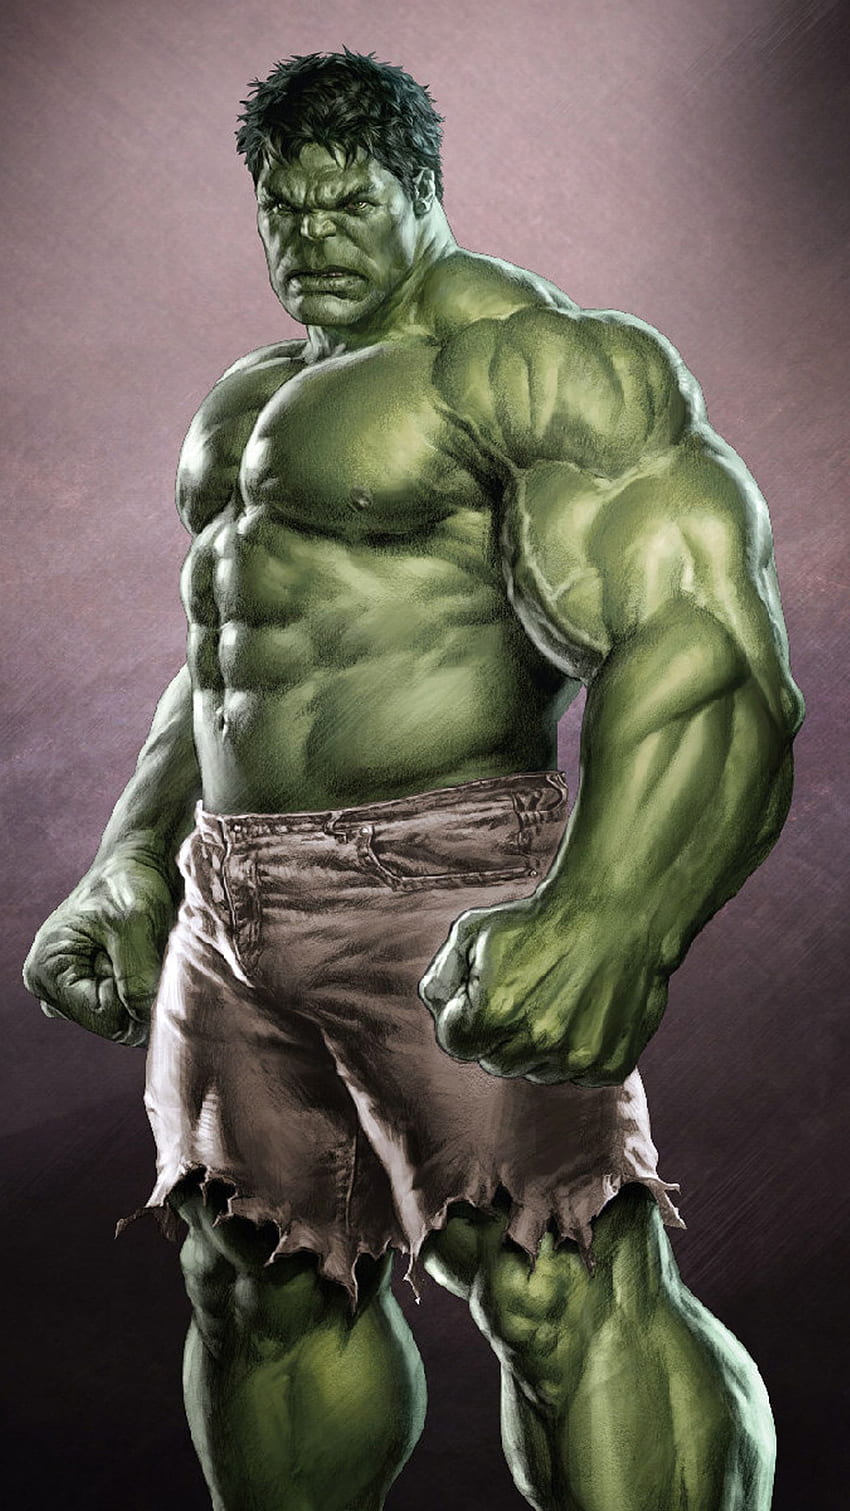 Tranh trẻ em 3D người khổng lồ xanh Hulk